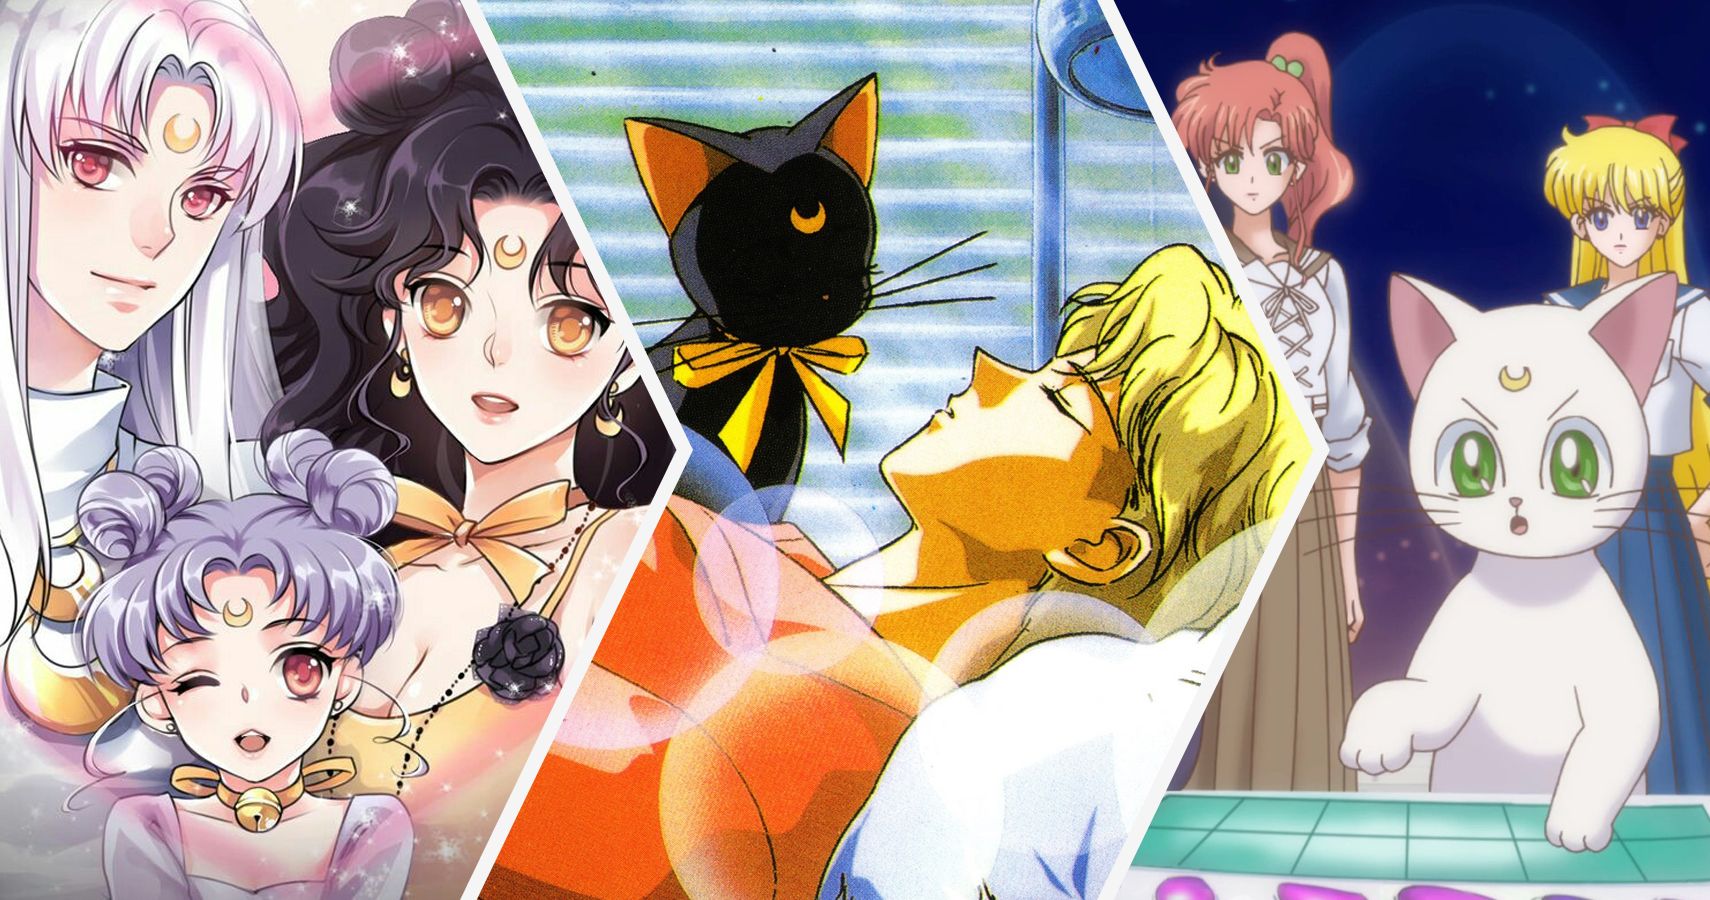 Sailor Moon 19 Secrets About Luna And Artemis Relationship